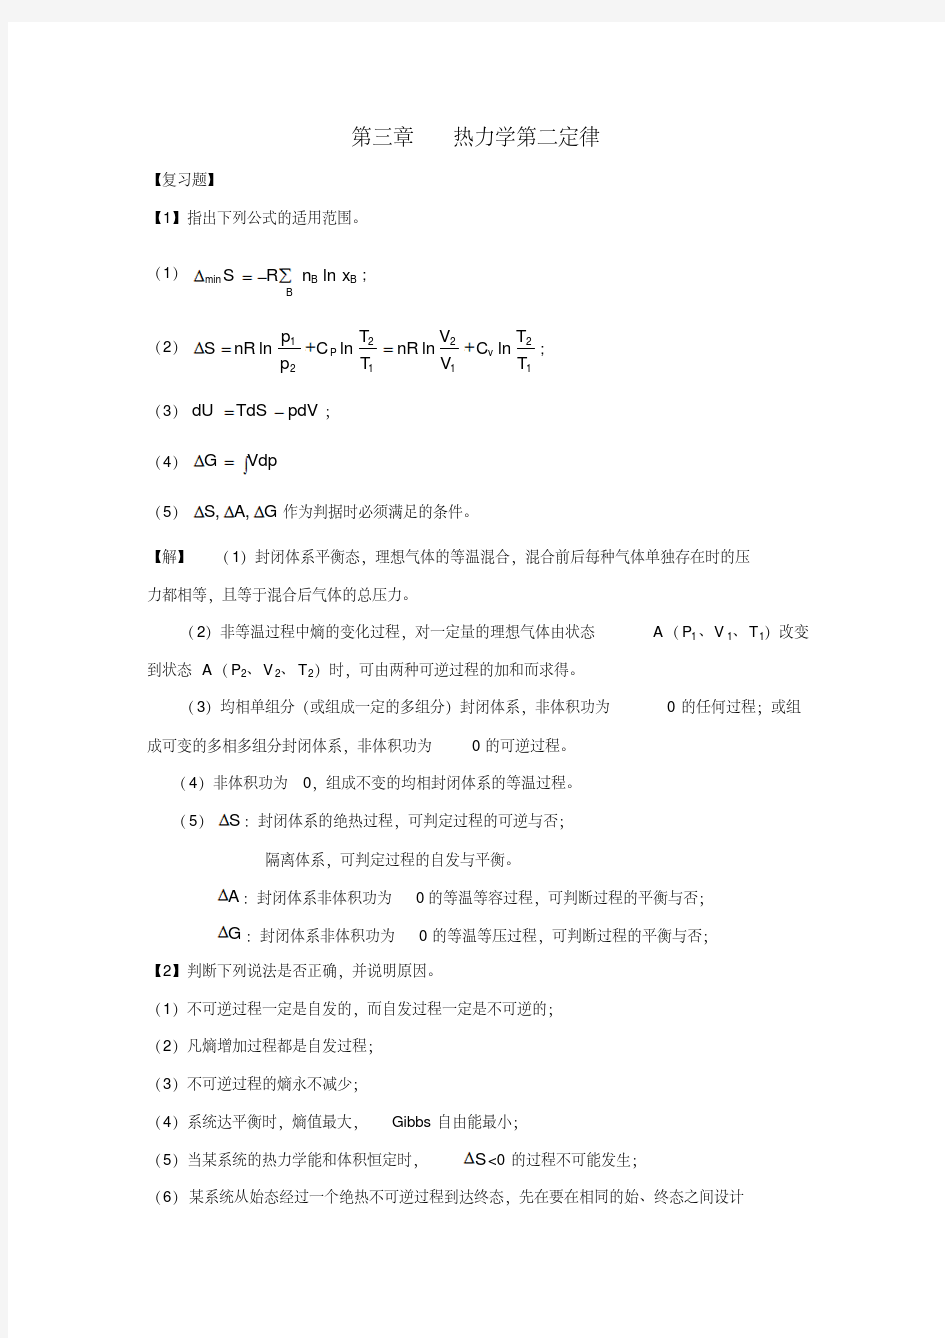 物理化学课后答案-热力学第二定律-精选.pdf